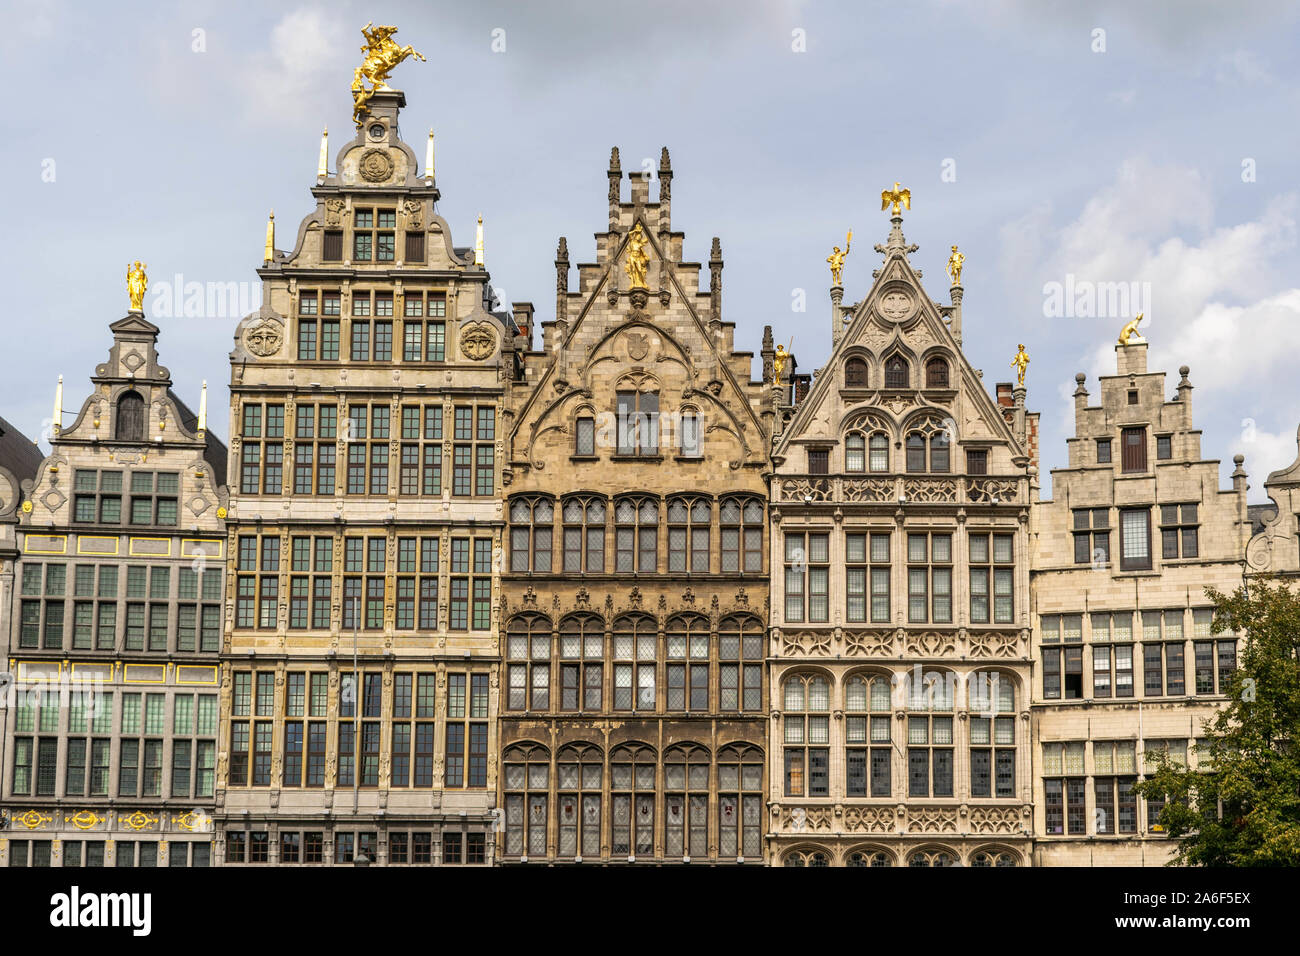 Antwerpen, Belgien - 9 September 2019: Grote Markt, Antwerpen, Marktplatz mit Rathaus, aufwendige guildhalls aus dem 16. Jahrhundert. Postkarte Hintergrund Stockfoto